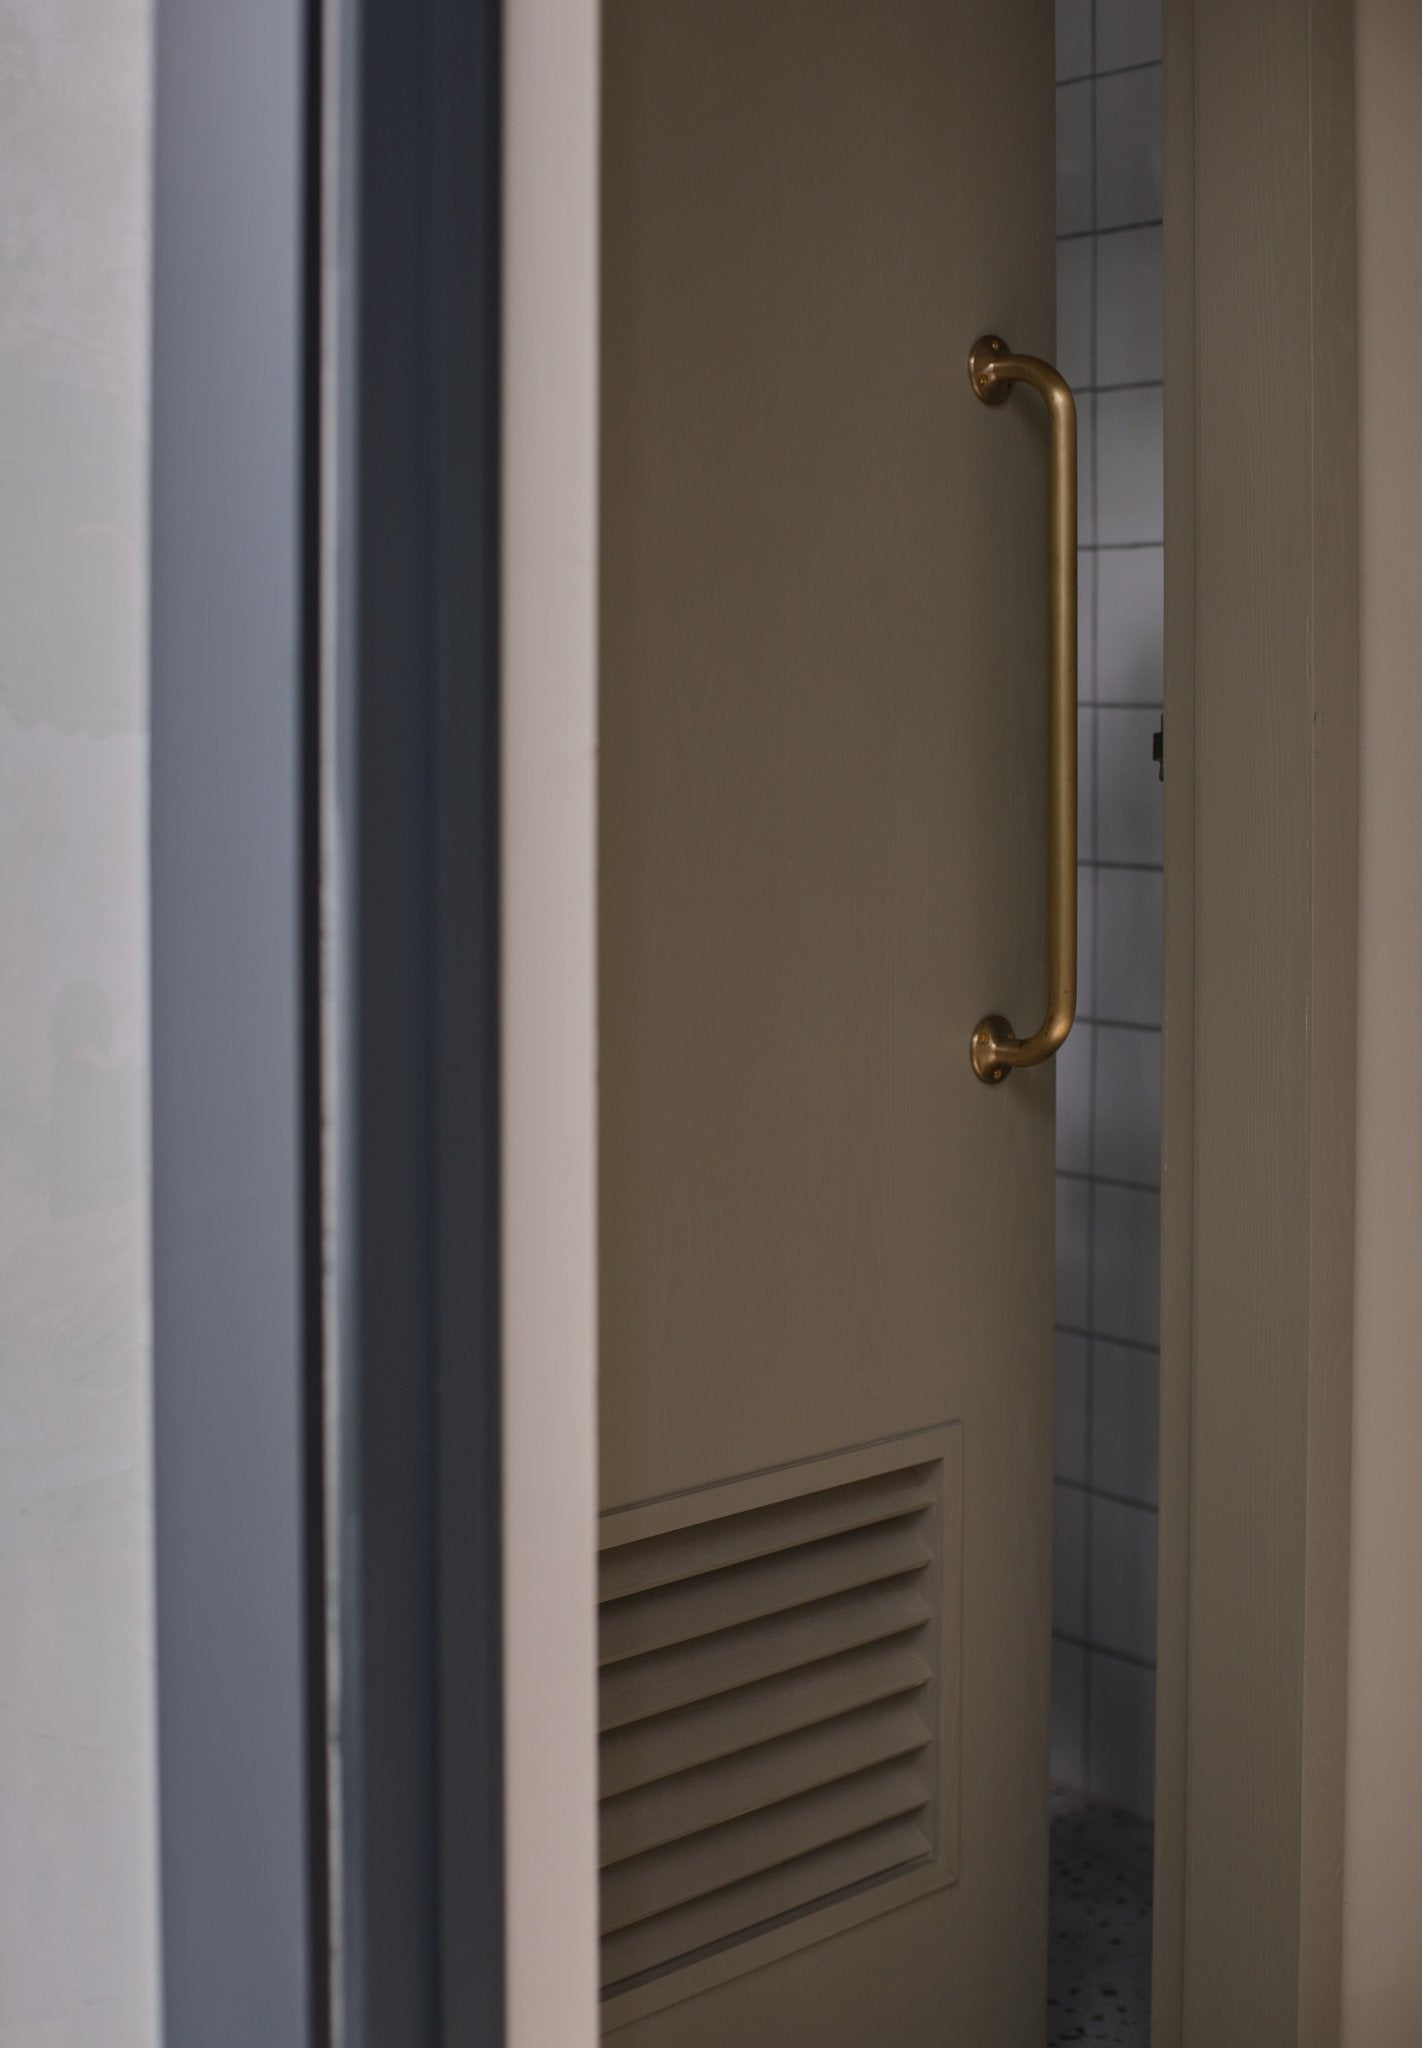 ALOTOF Solid Brass Door Handles - Sleek 20" Door Pull Bar Handle for Modern Interiors - ALOTOFBRASSERA